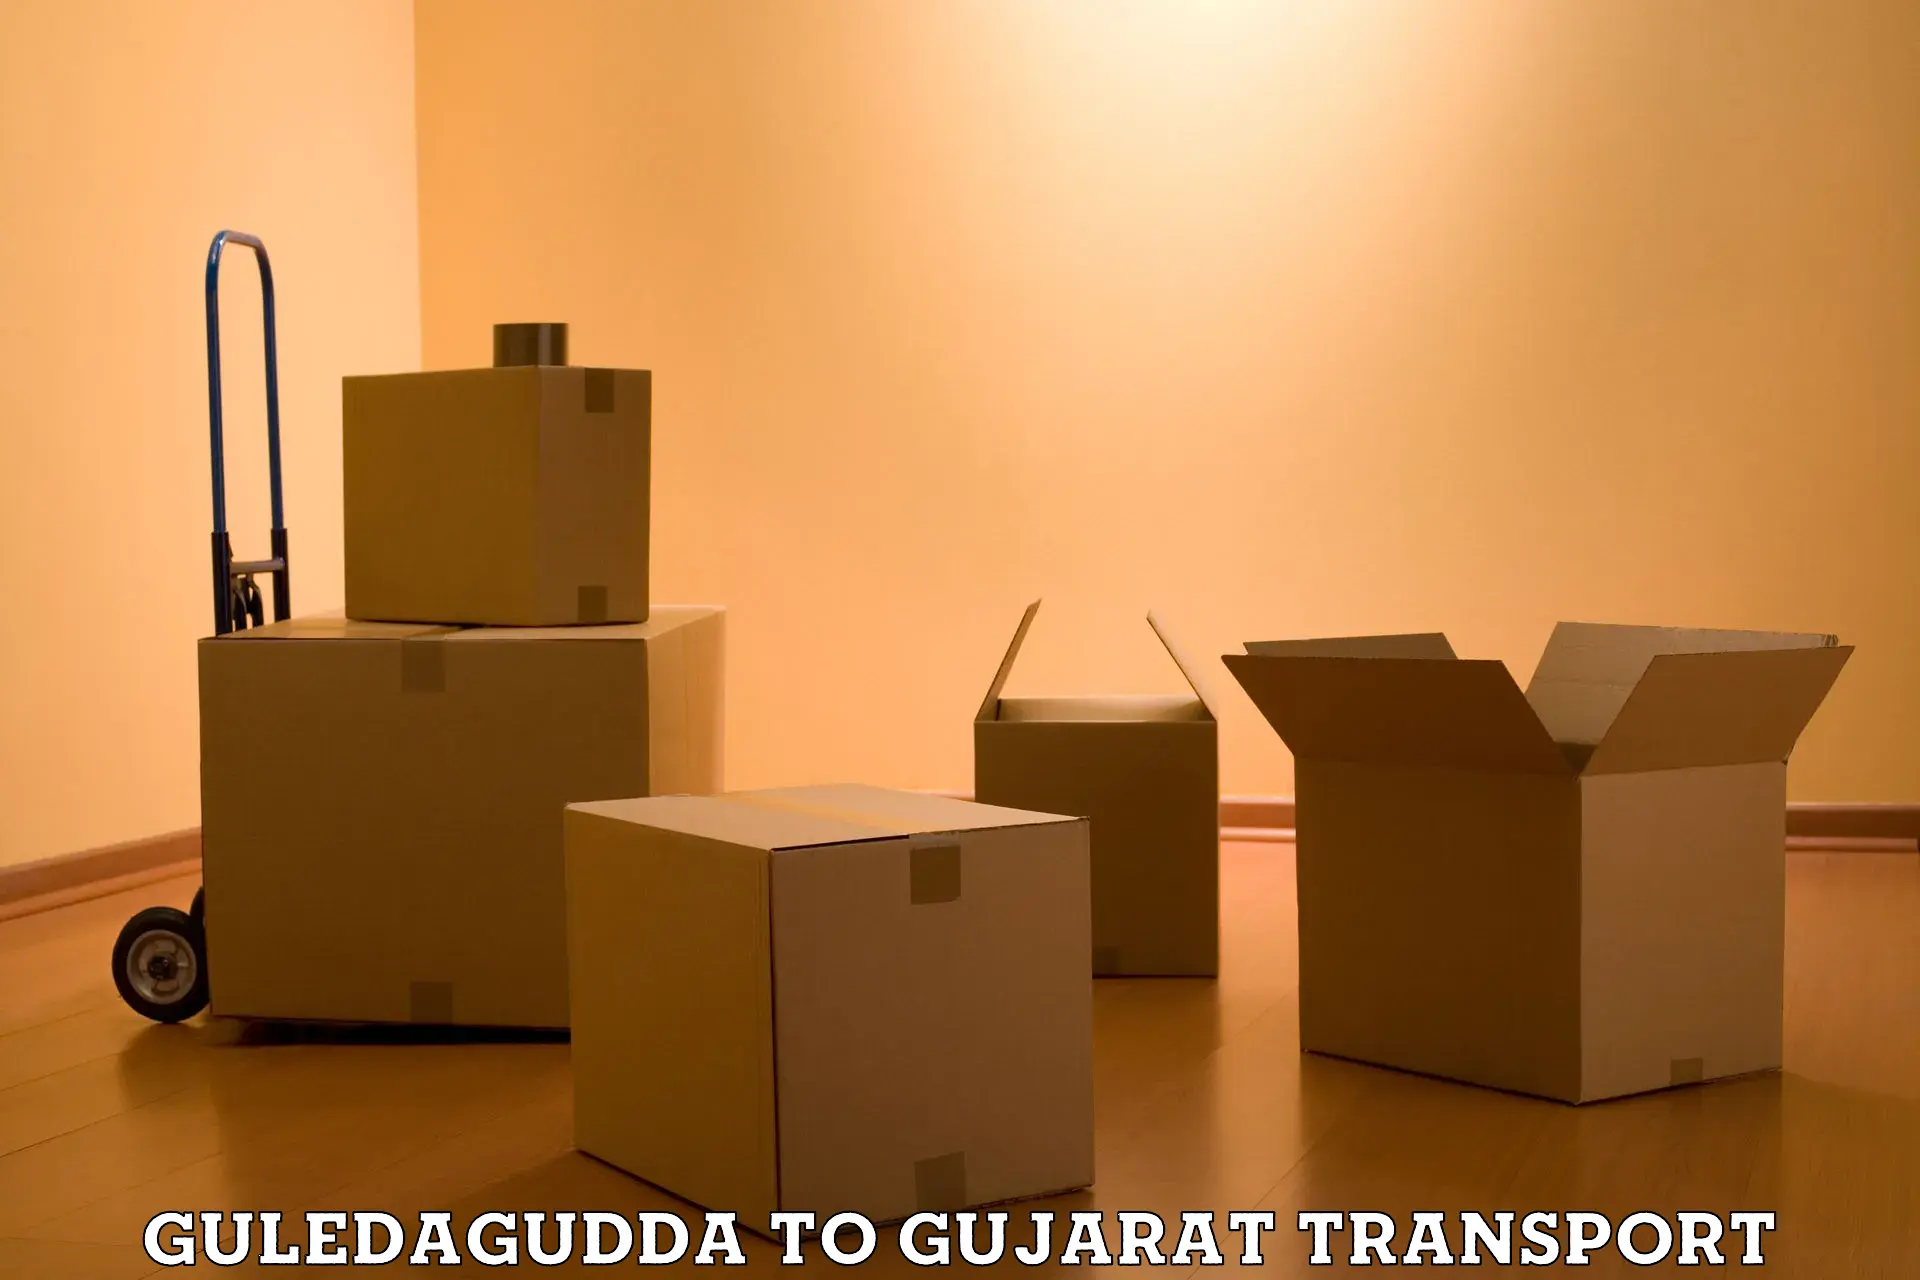 Commercial transport service in Guledagudda to Bhavnagar